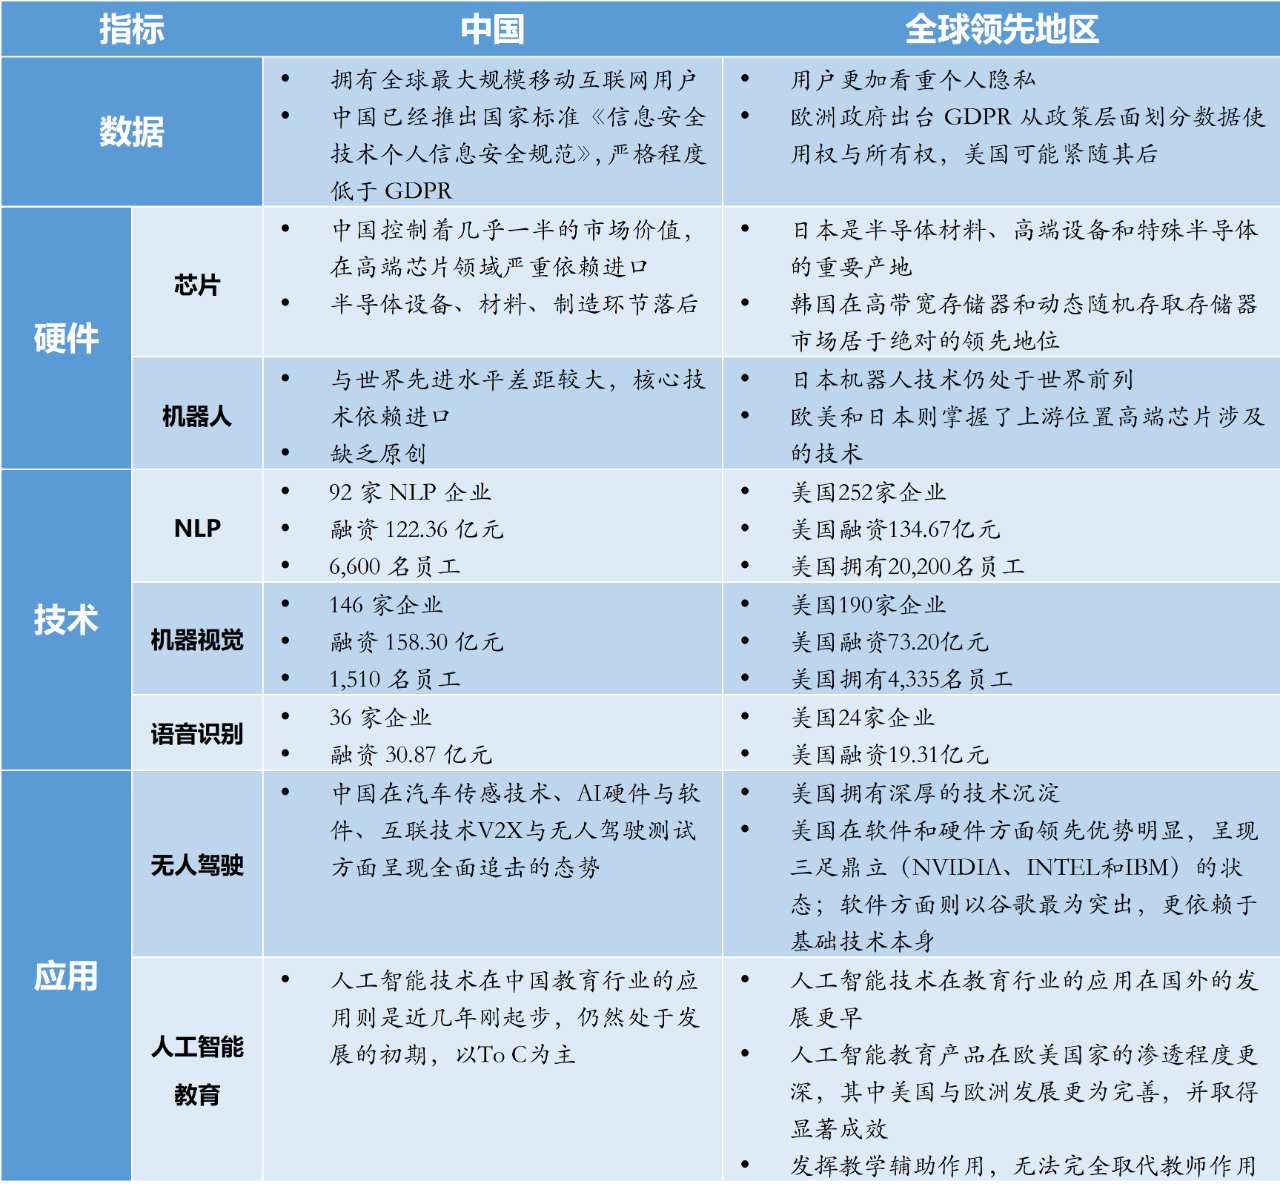 中国人工智能技术与全球领先地区对比